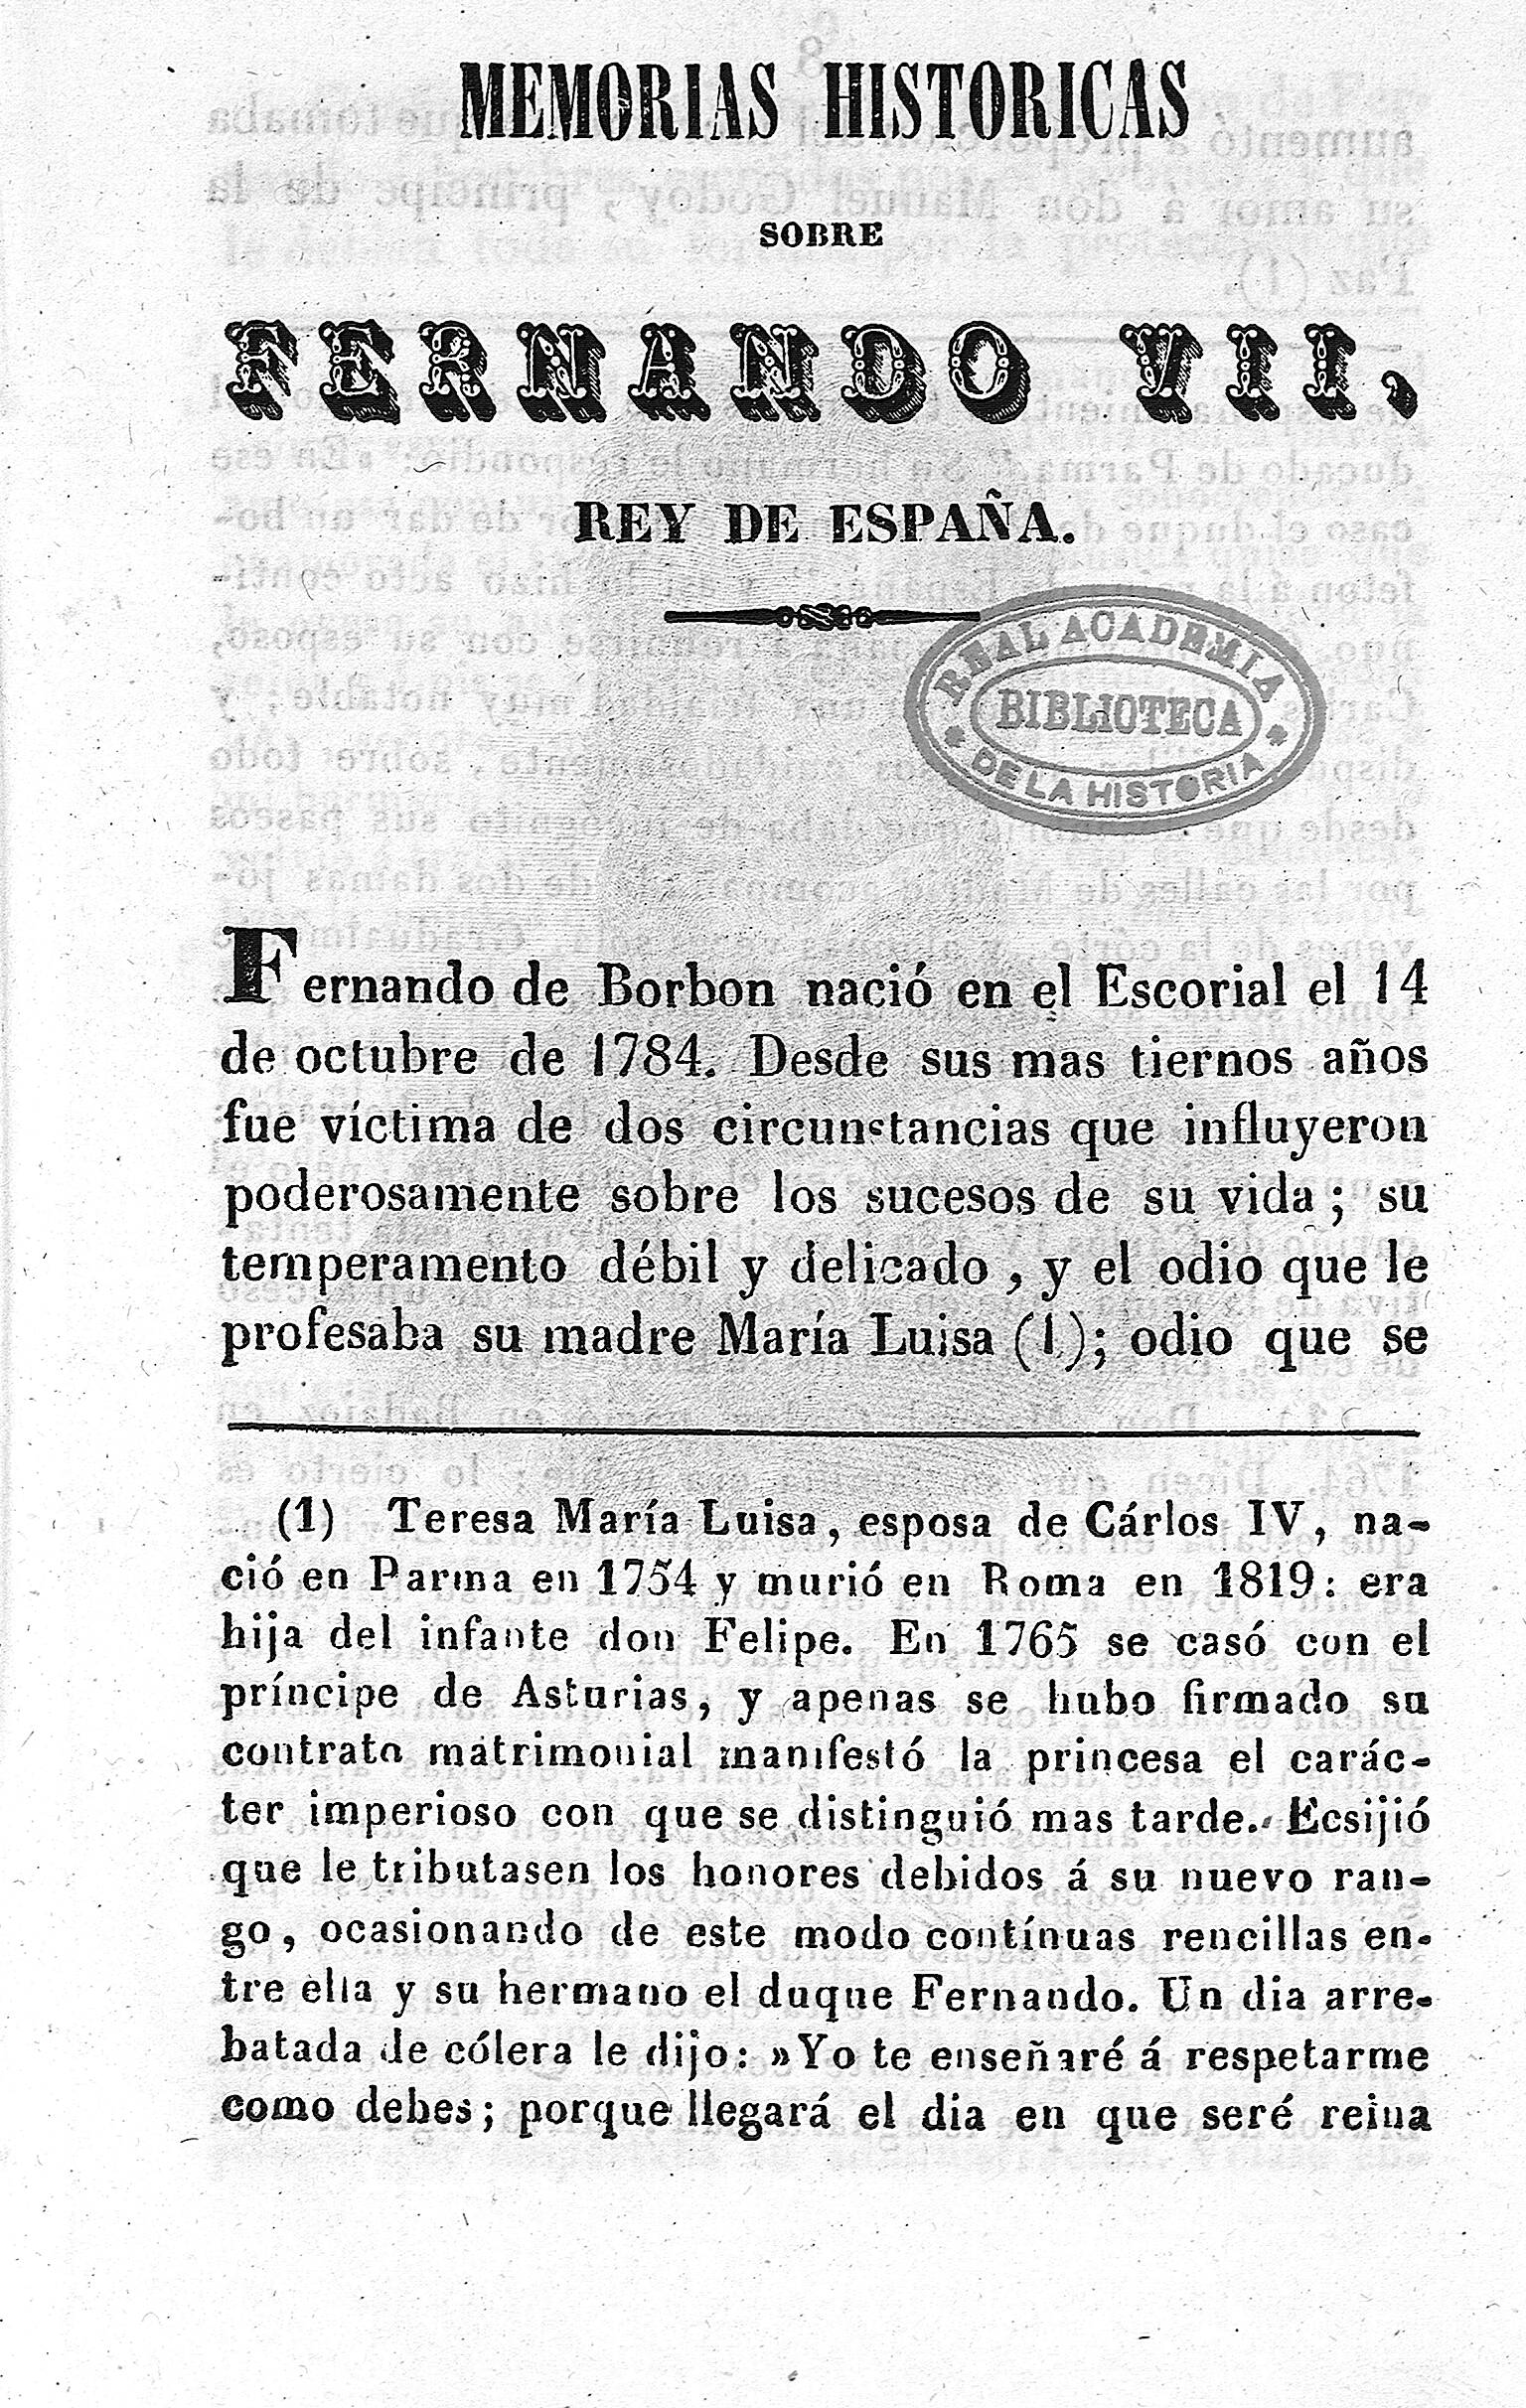 Memorias históricas sobre Fernando VII, Rey de España